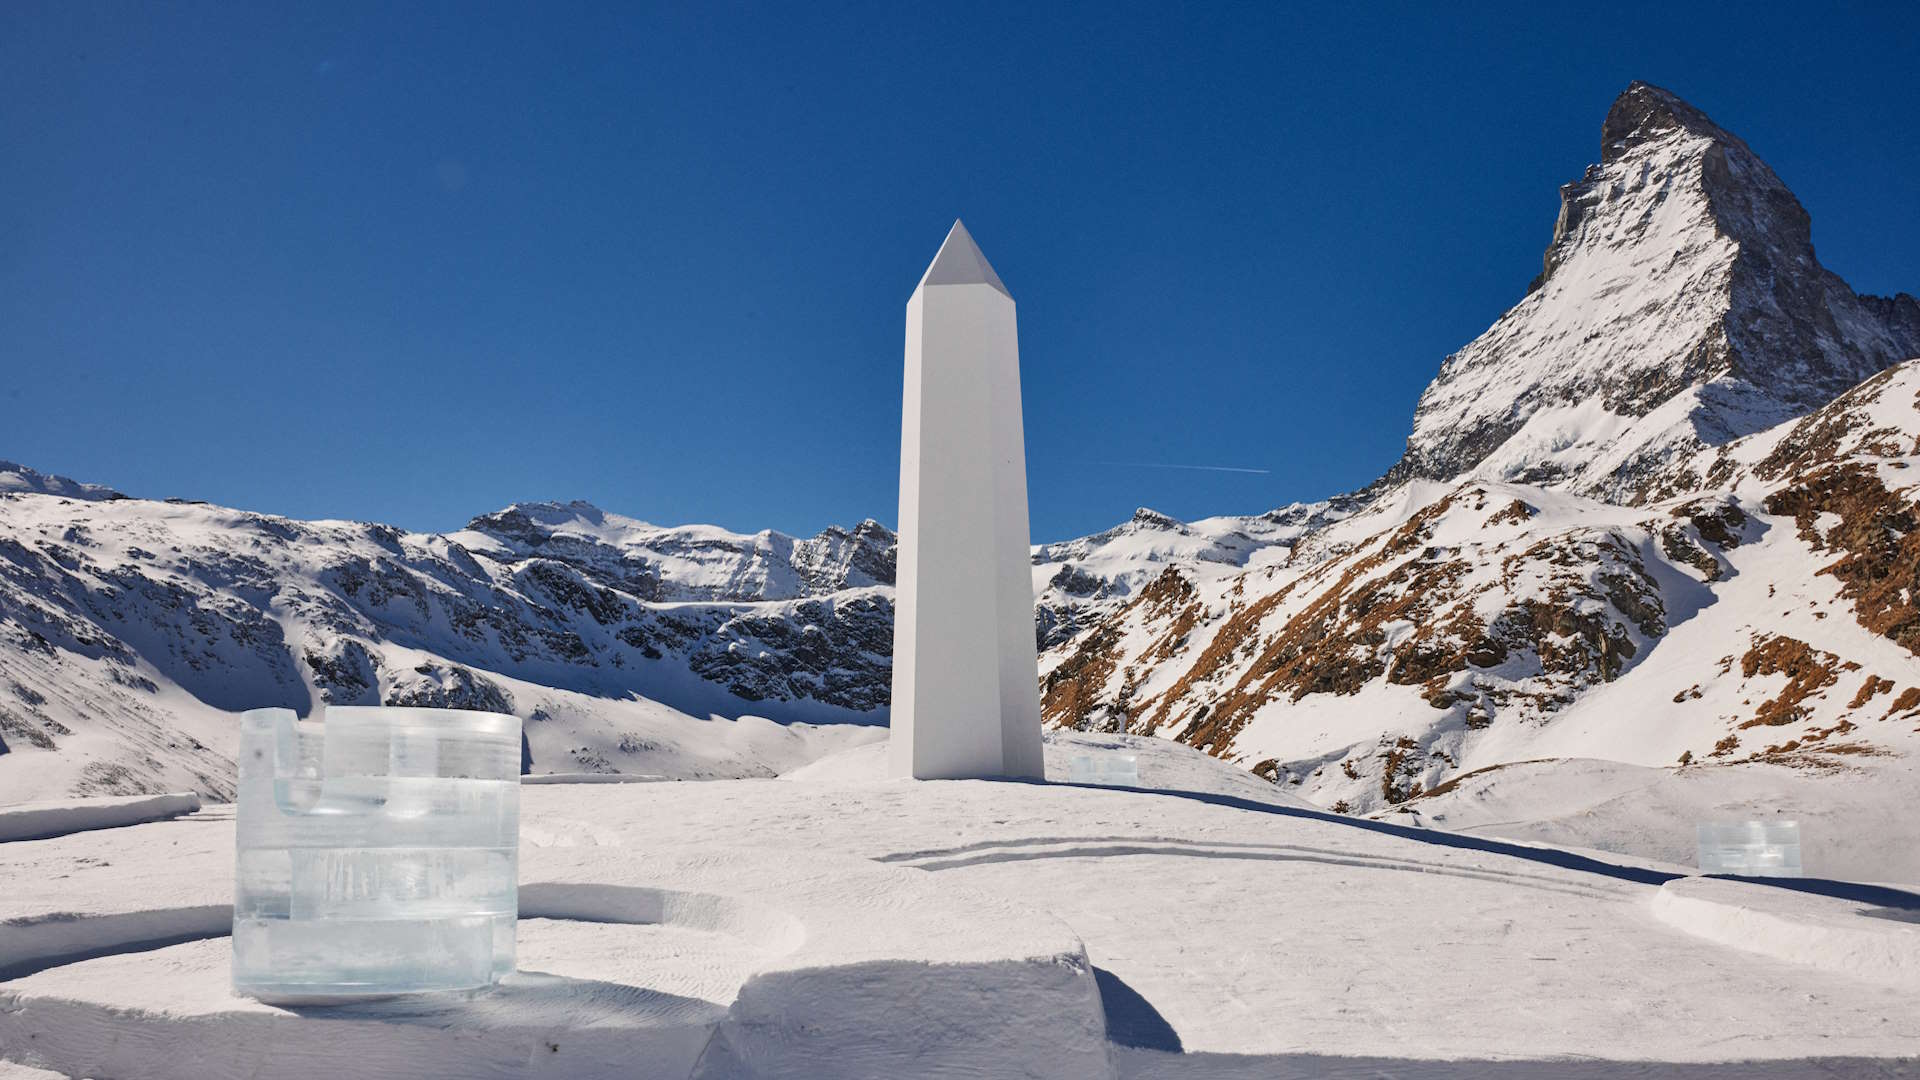 Zum Auftakt der neuen Zusammenarbeit mit Hublot hat Daniel Arsham eine temporäre 20-Meter-Sonnenuhr entworfen, die unter dem Matterhorn aufgestellt wurde.